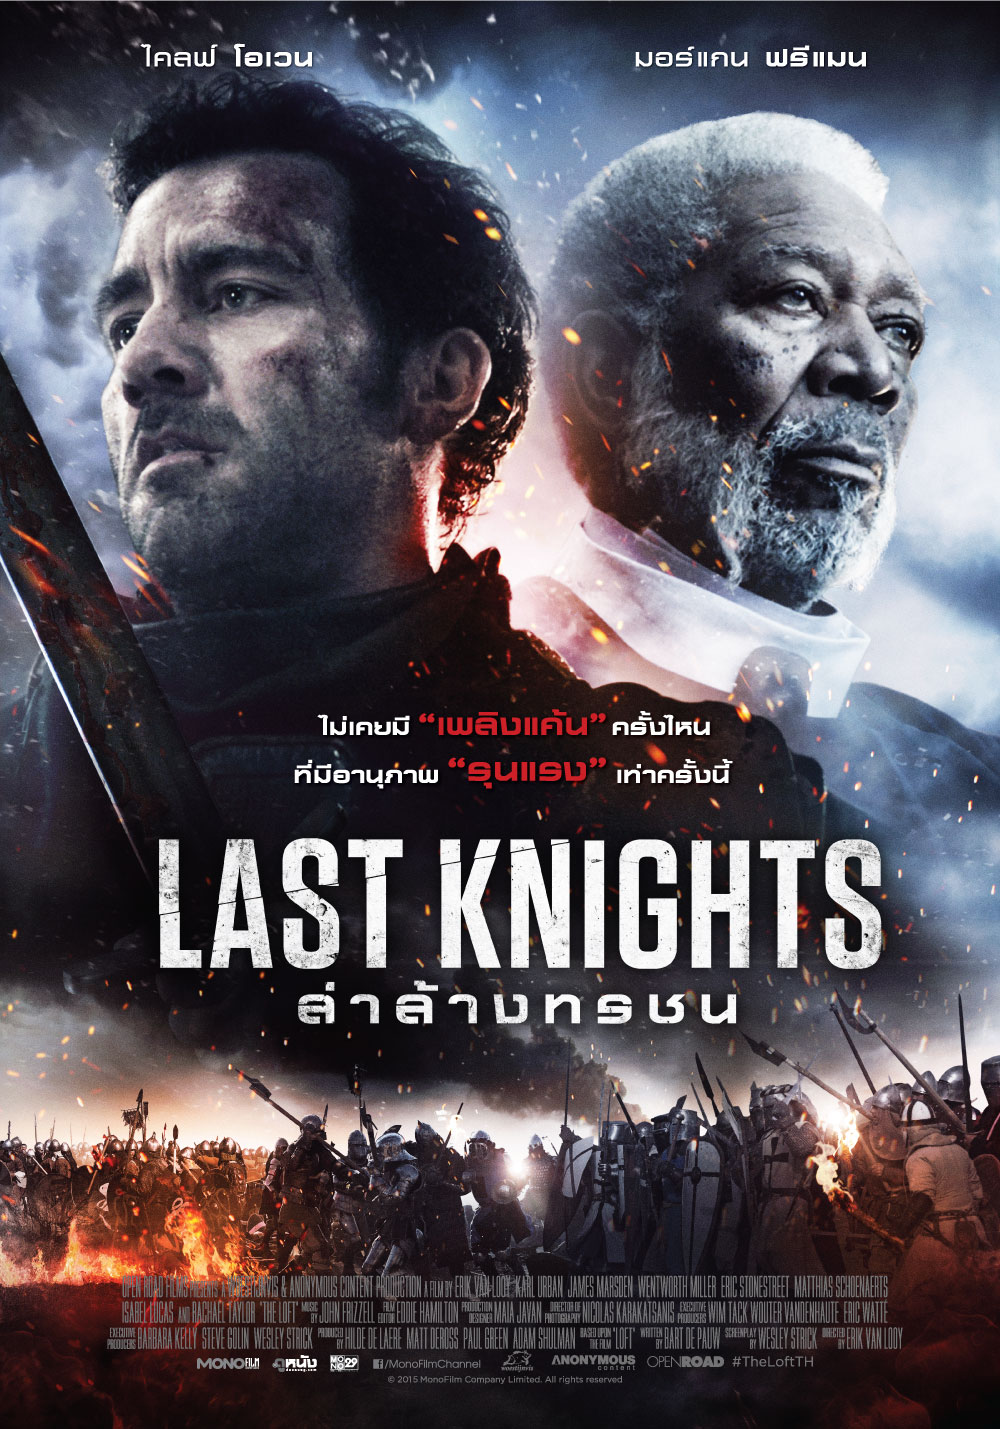 ดูหนังออนไลน์ฟรี Last Knights (2015) อัศวินคนสุดท้าย